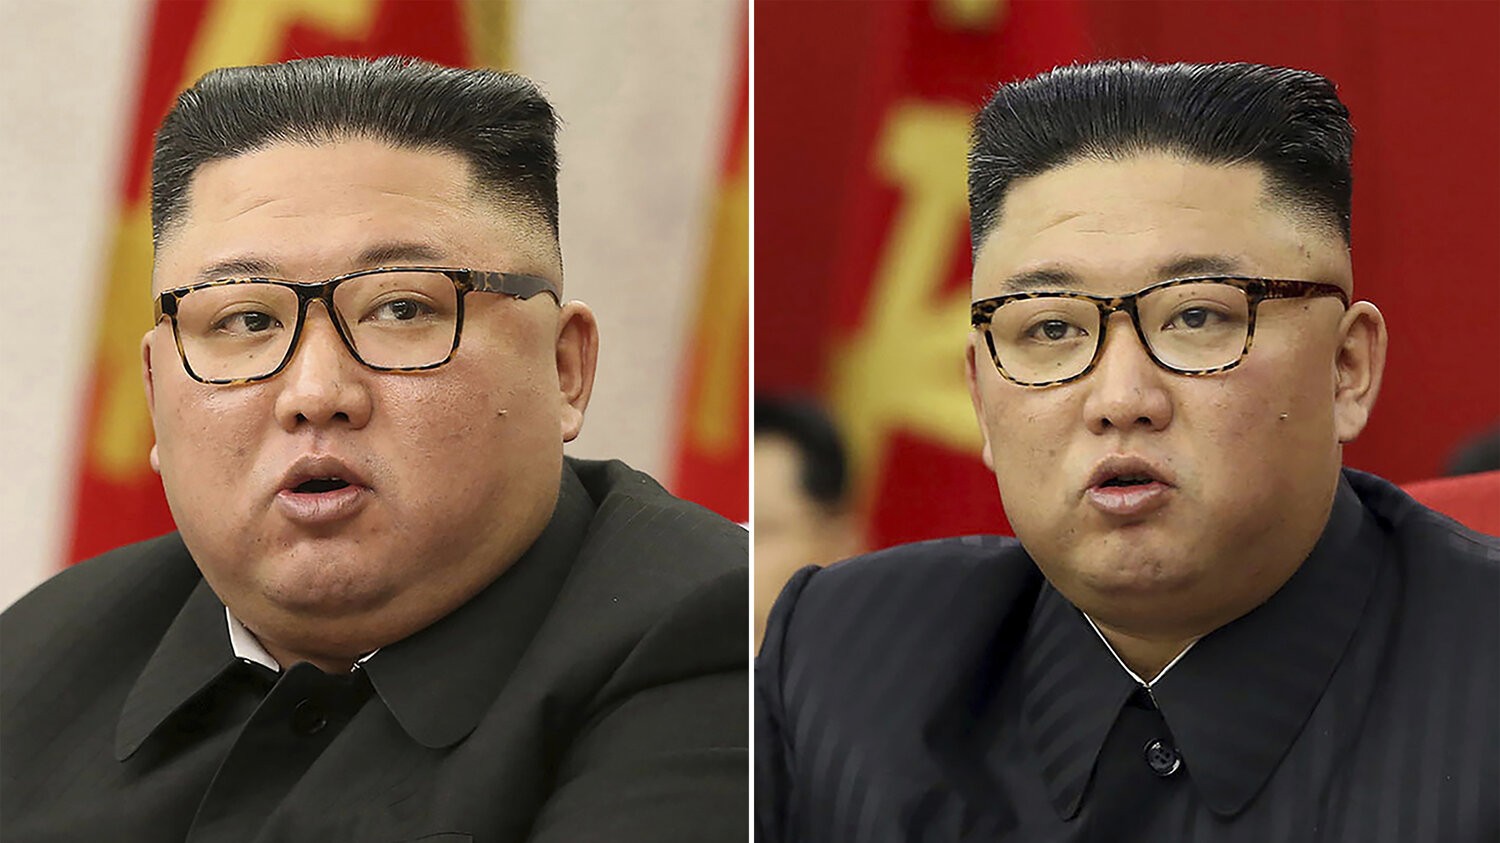 Bức ảnh chụp nhà lãnh đạo Triều Tiên trong các cuộc họp của Đảng Lao động Triều Tiên tại Bình Nhưỡng ngày 8/2 (trái) và ngày 15/6. Vẻ ngoài trông gầy đi đã dấy lên nhiều đồn đoán ông có vấn đề về sức khỏe. (Nguồn: Korean Central News Agency/Korea News Service/AP)